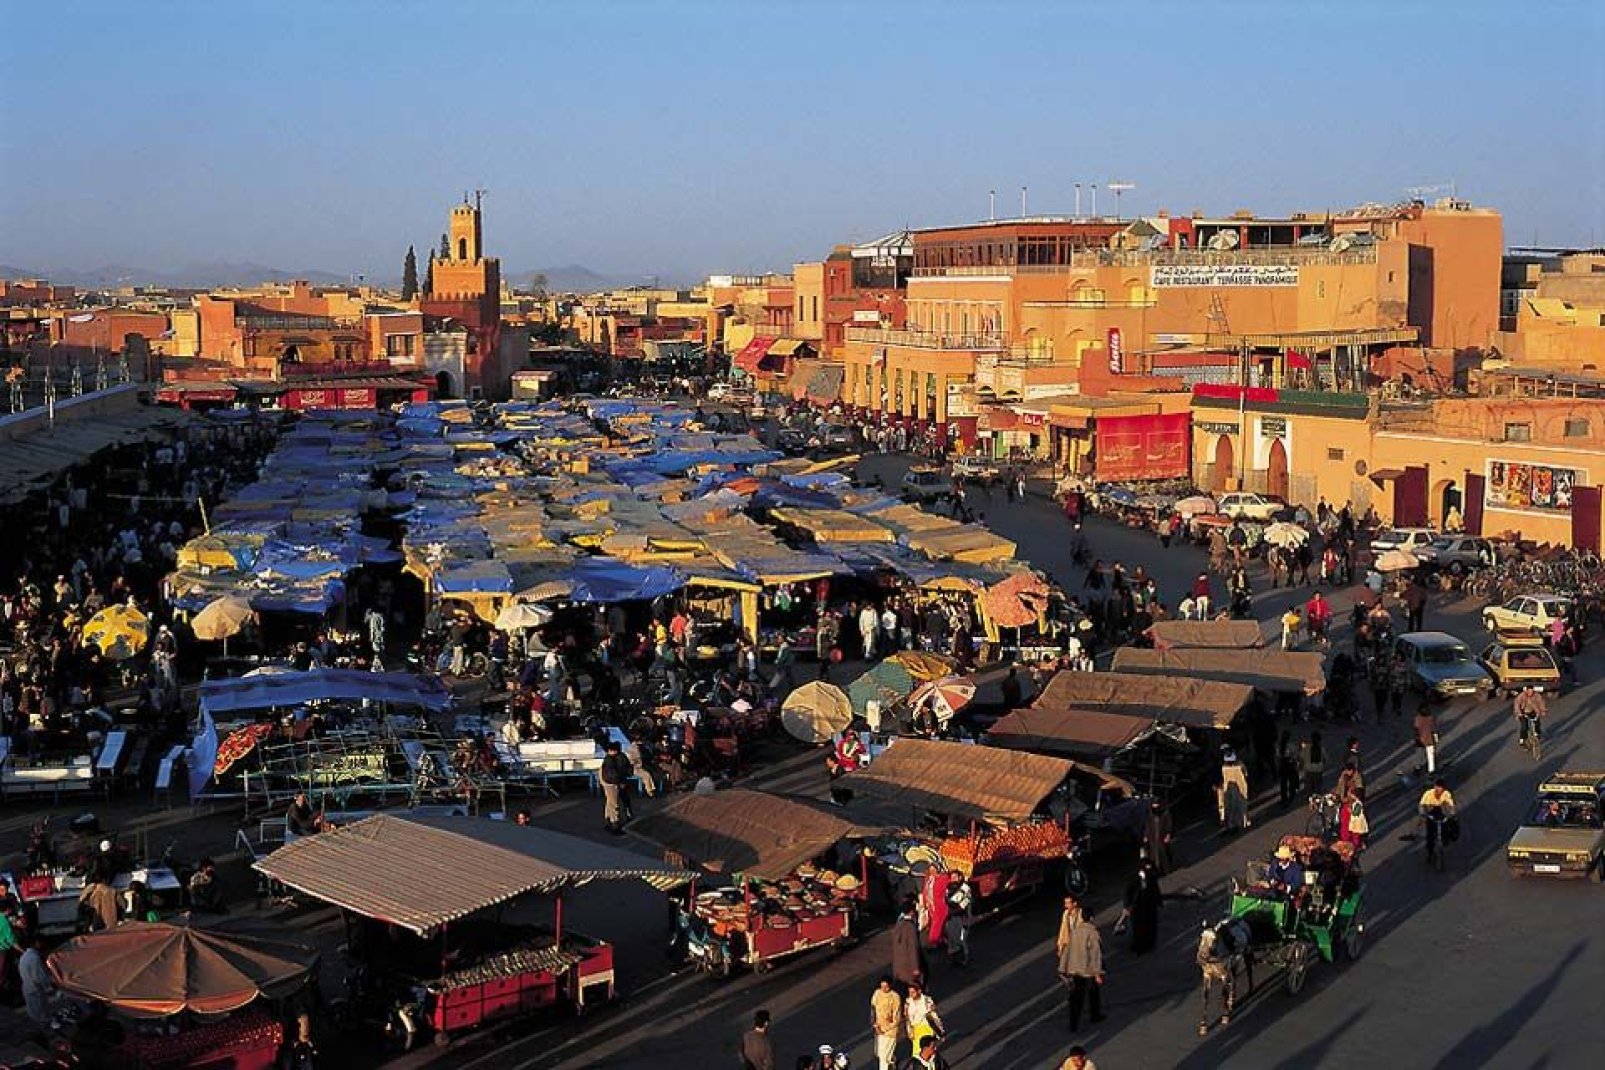 Marrakesch gilt als die lebendigste und angesagteste Stadt von ganz Marokko. Dennoch hat diese Stadt nichts an Charme und Authentizität eingebüßt.